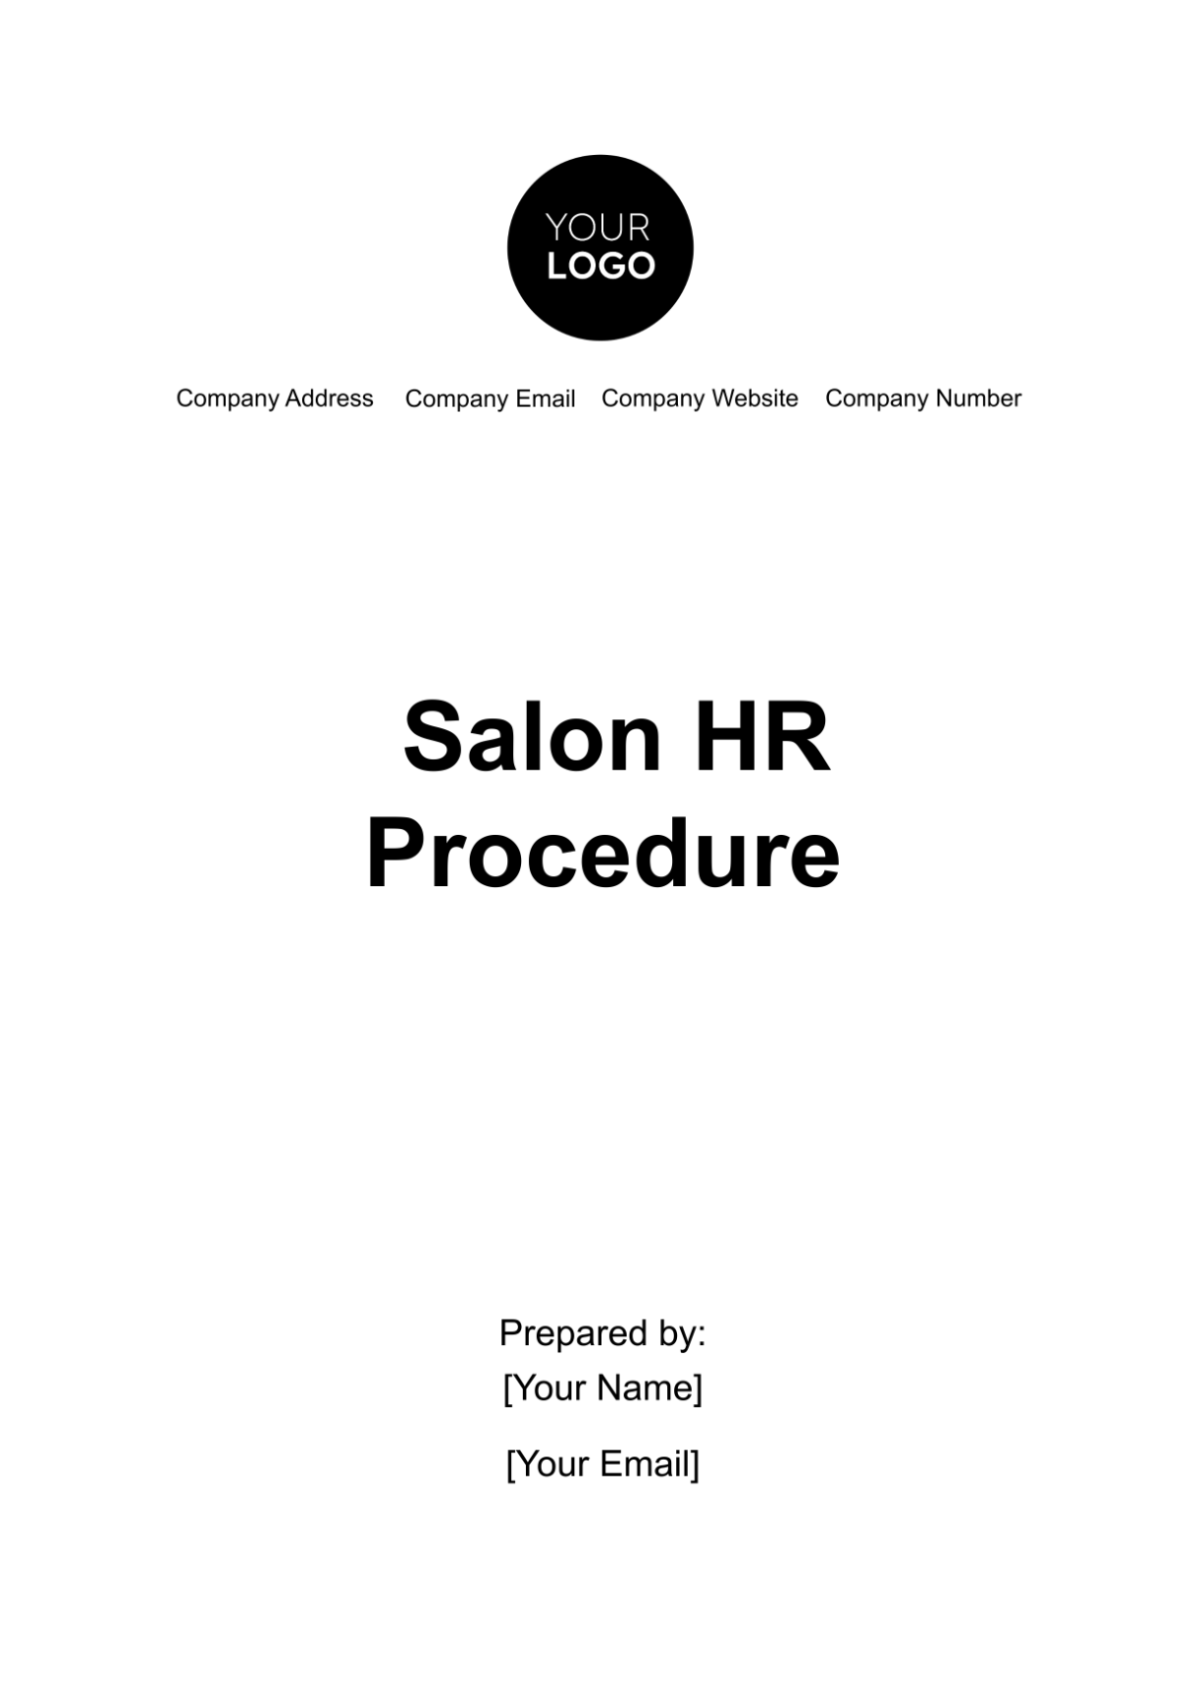 Free Salon HR Procedure Template